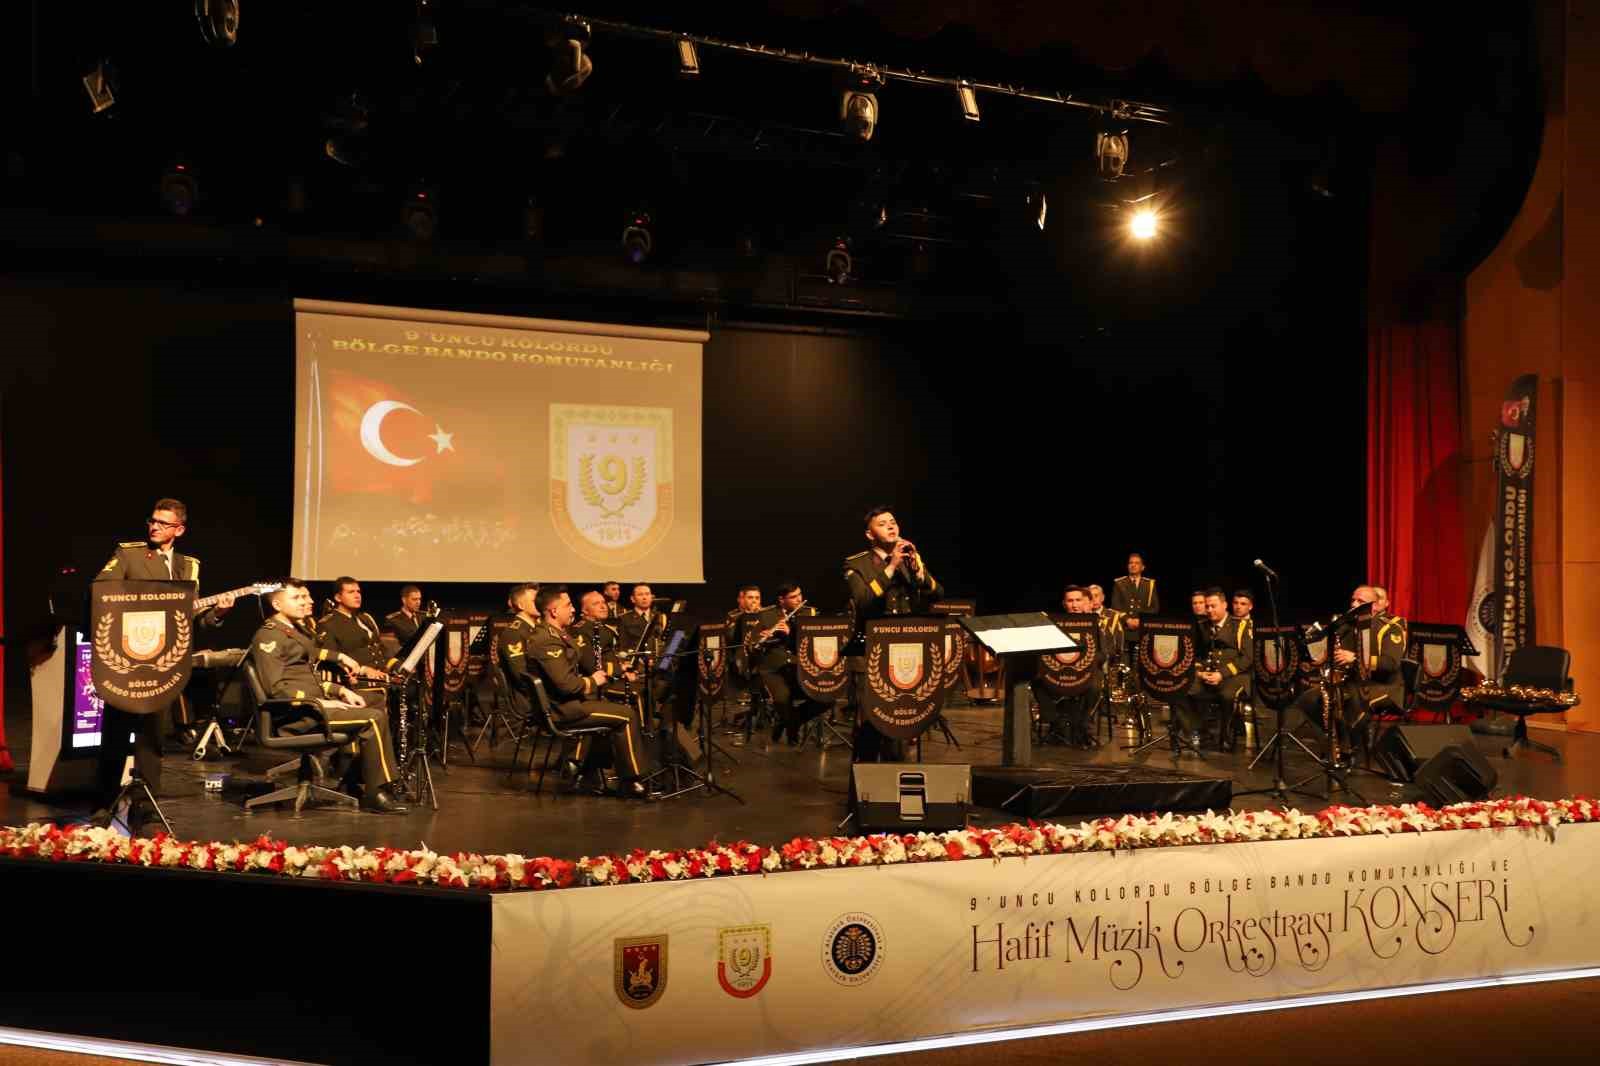 Askeri bandodan 19 Mayıs’a özel konser